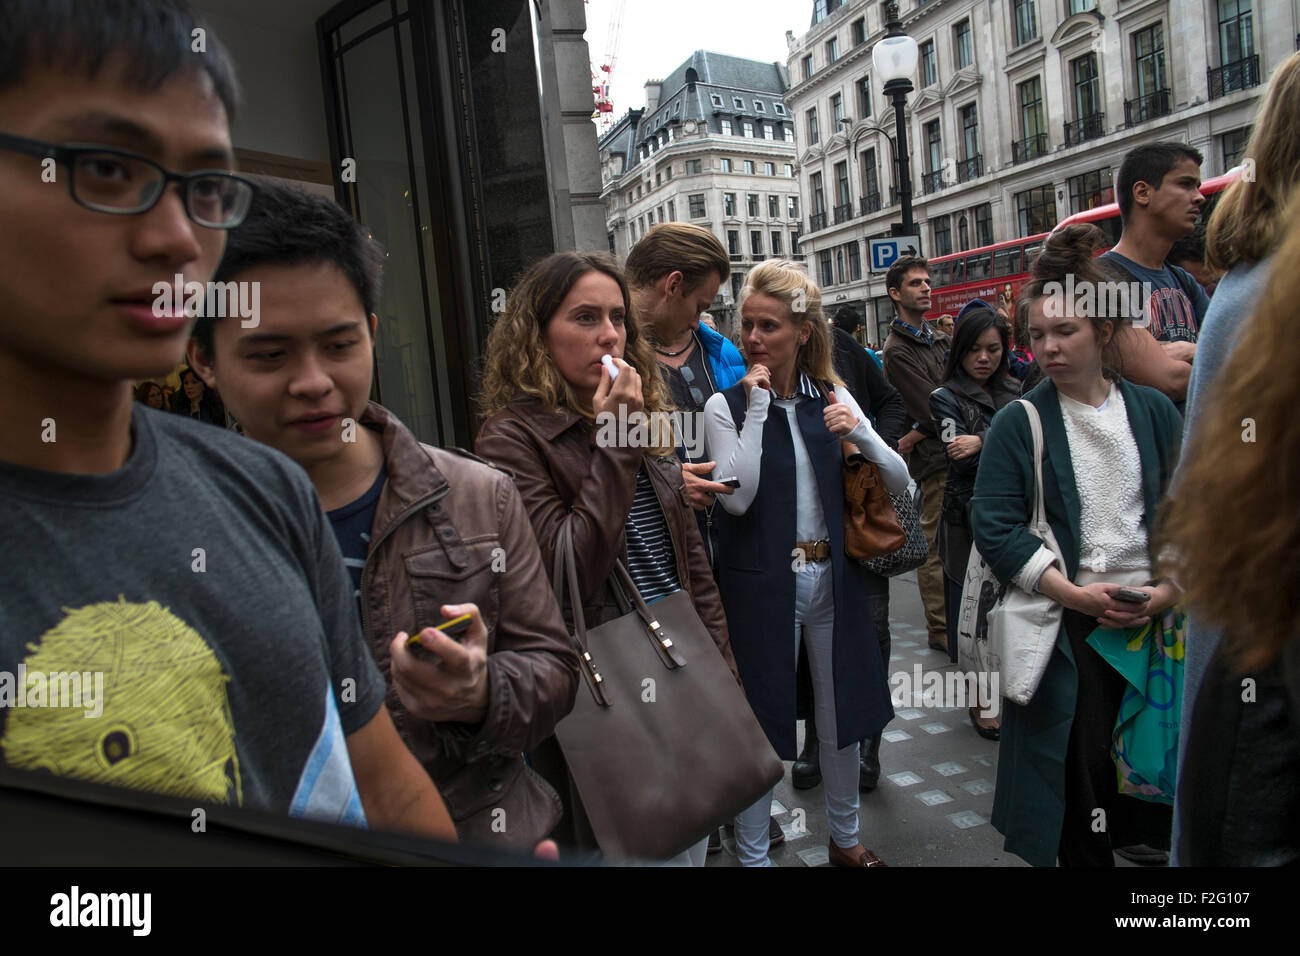 Shoppers sur Regent Street, l'une des principales rues commerçantes dans le West End de Londres. UK Banque D'Images